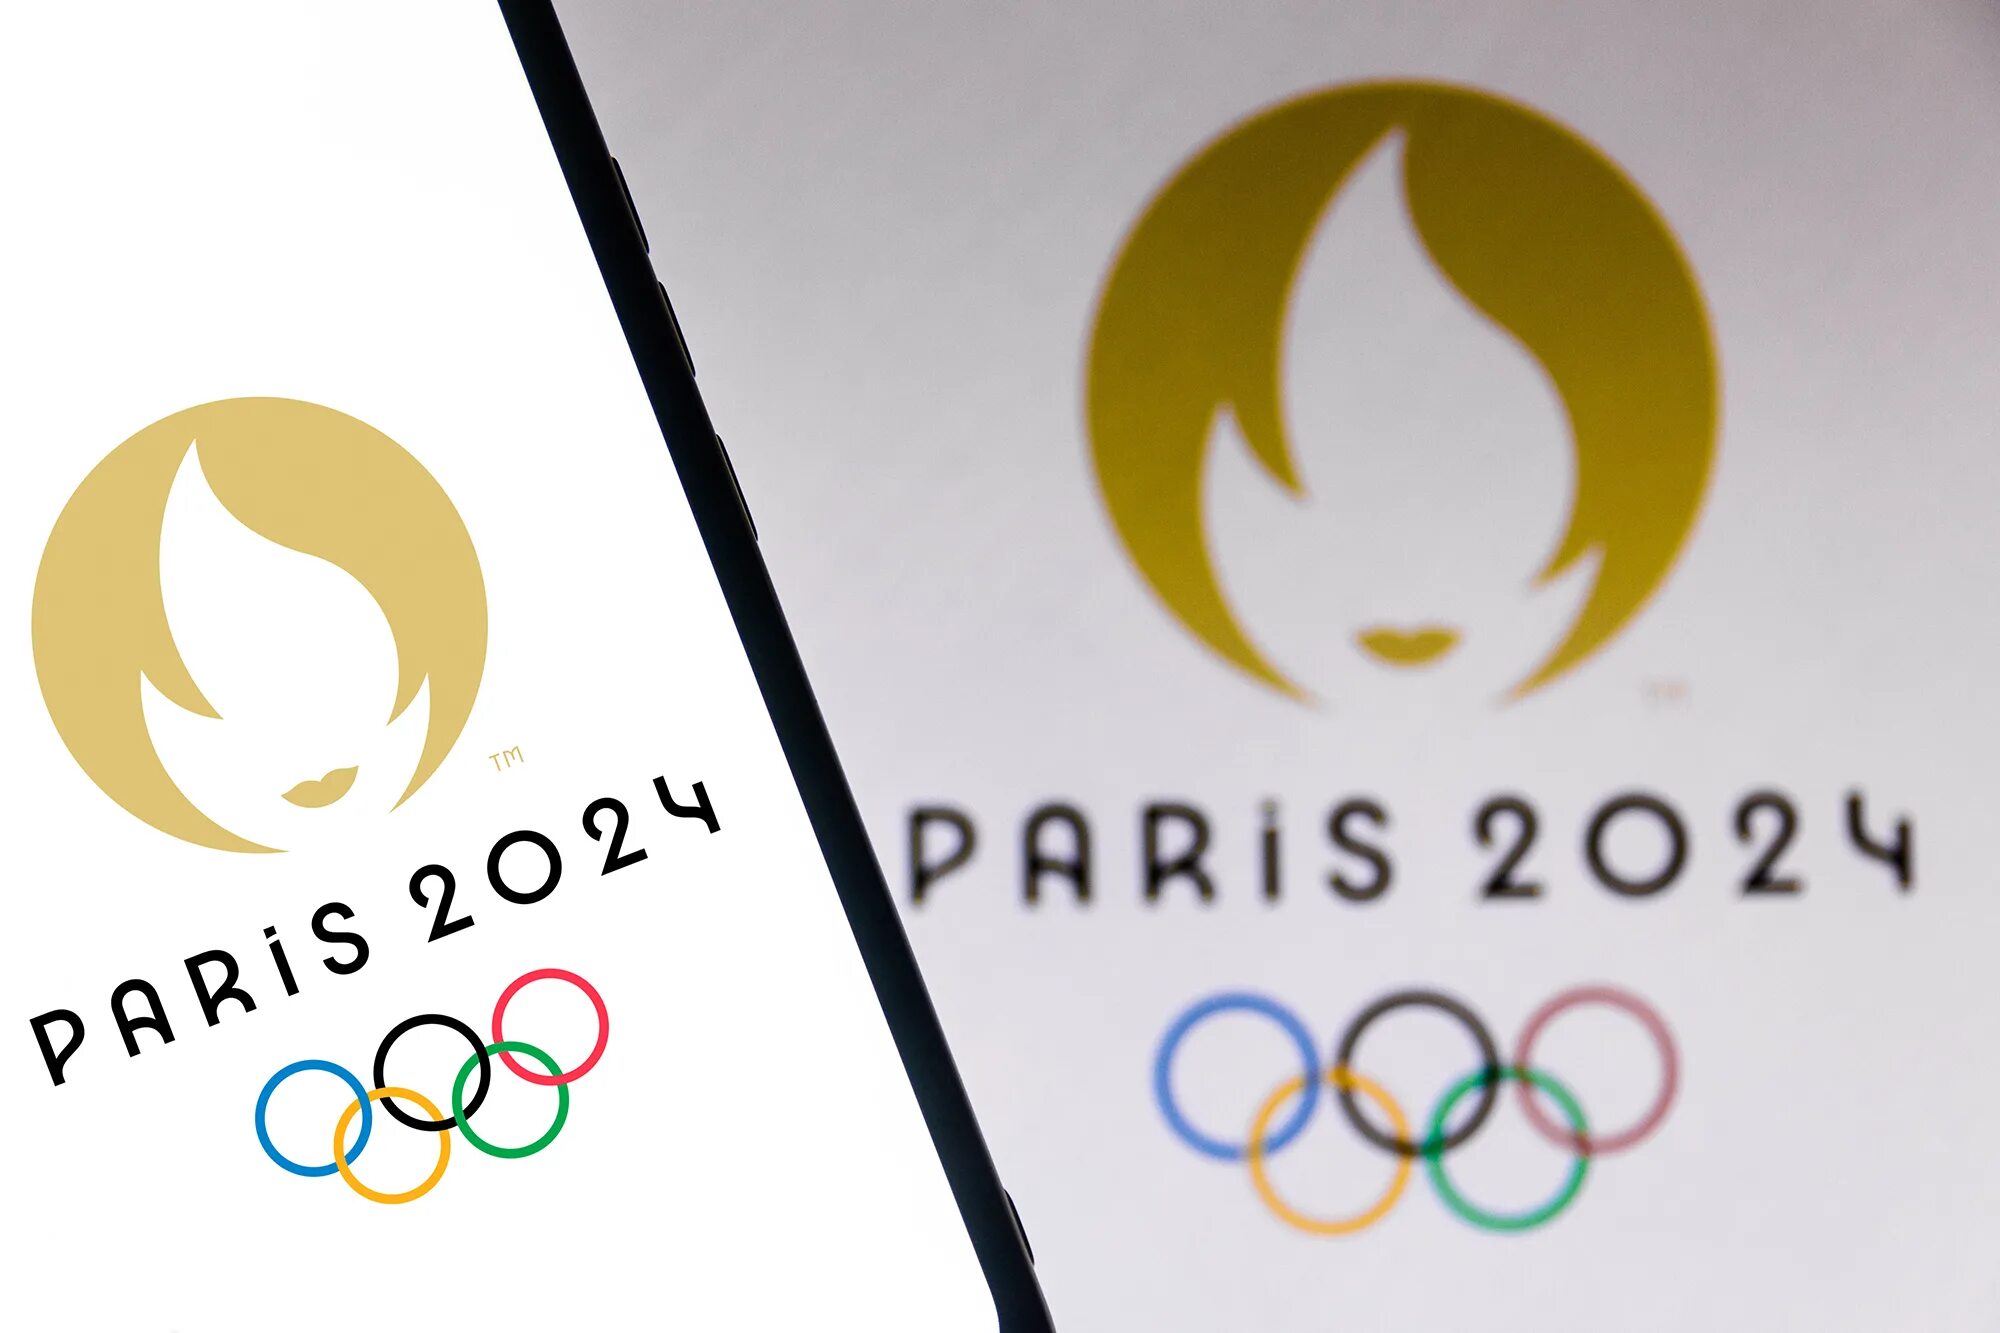 Африканские игры 2024. Олимпийские игры в Париже 2024. Олимпийский Париж 2024. Эмблема Олимпийских игр в Париже 2024.